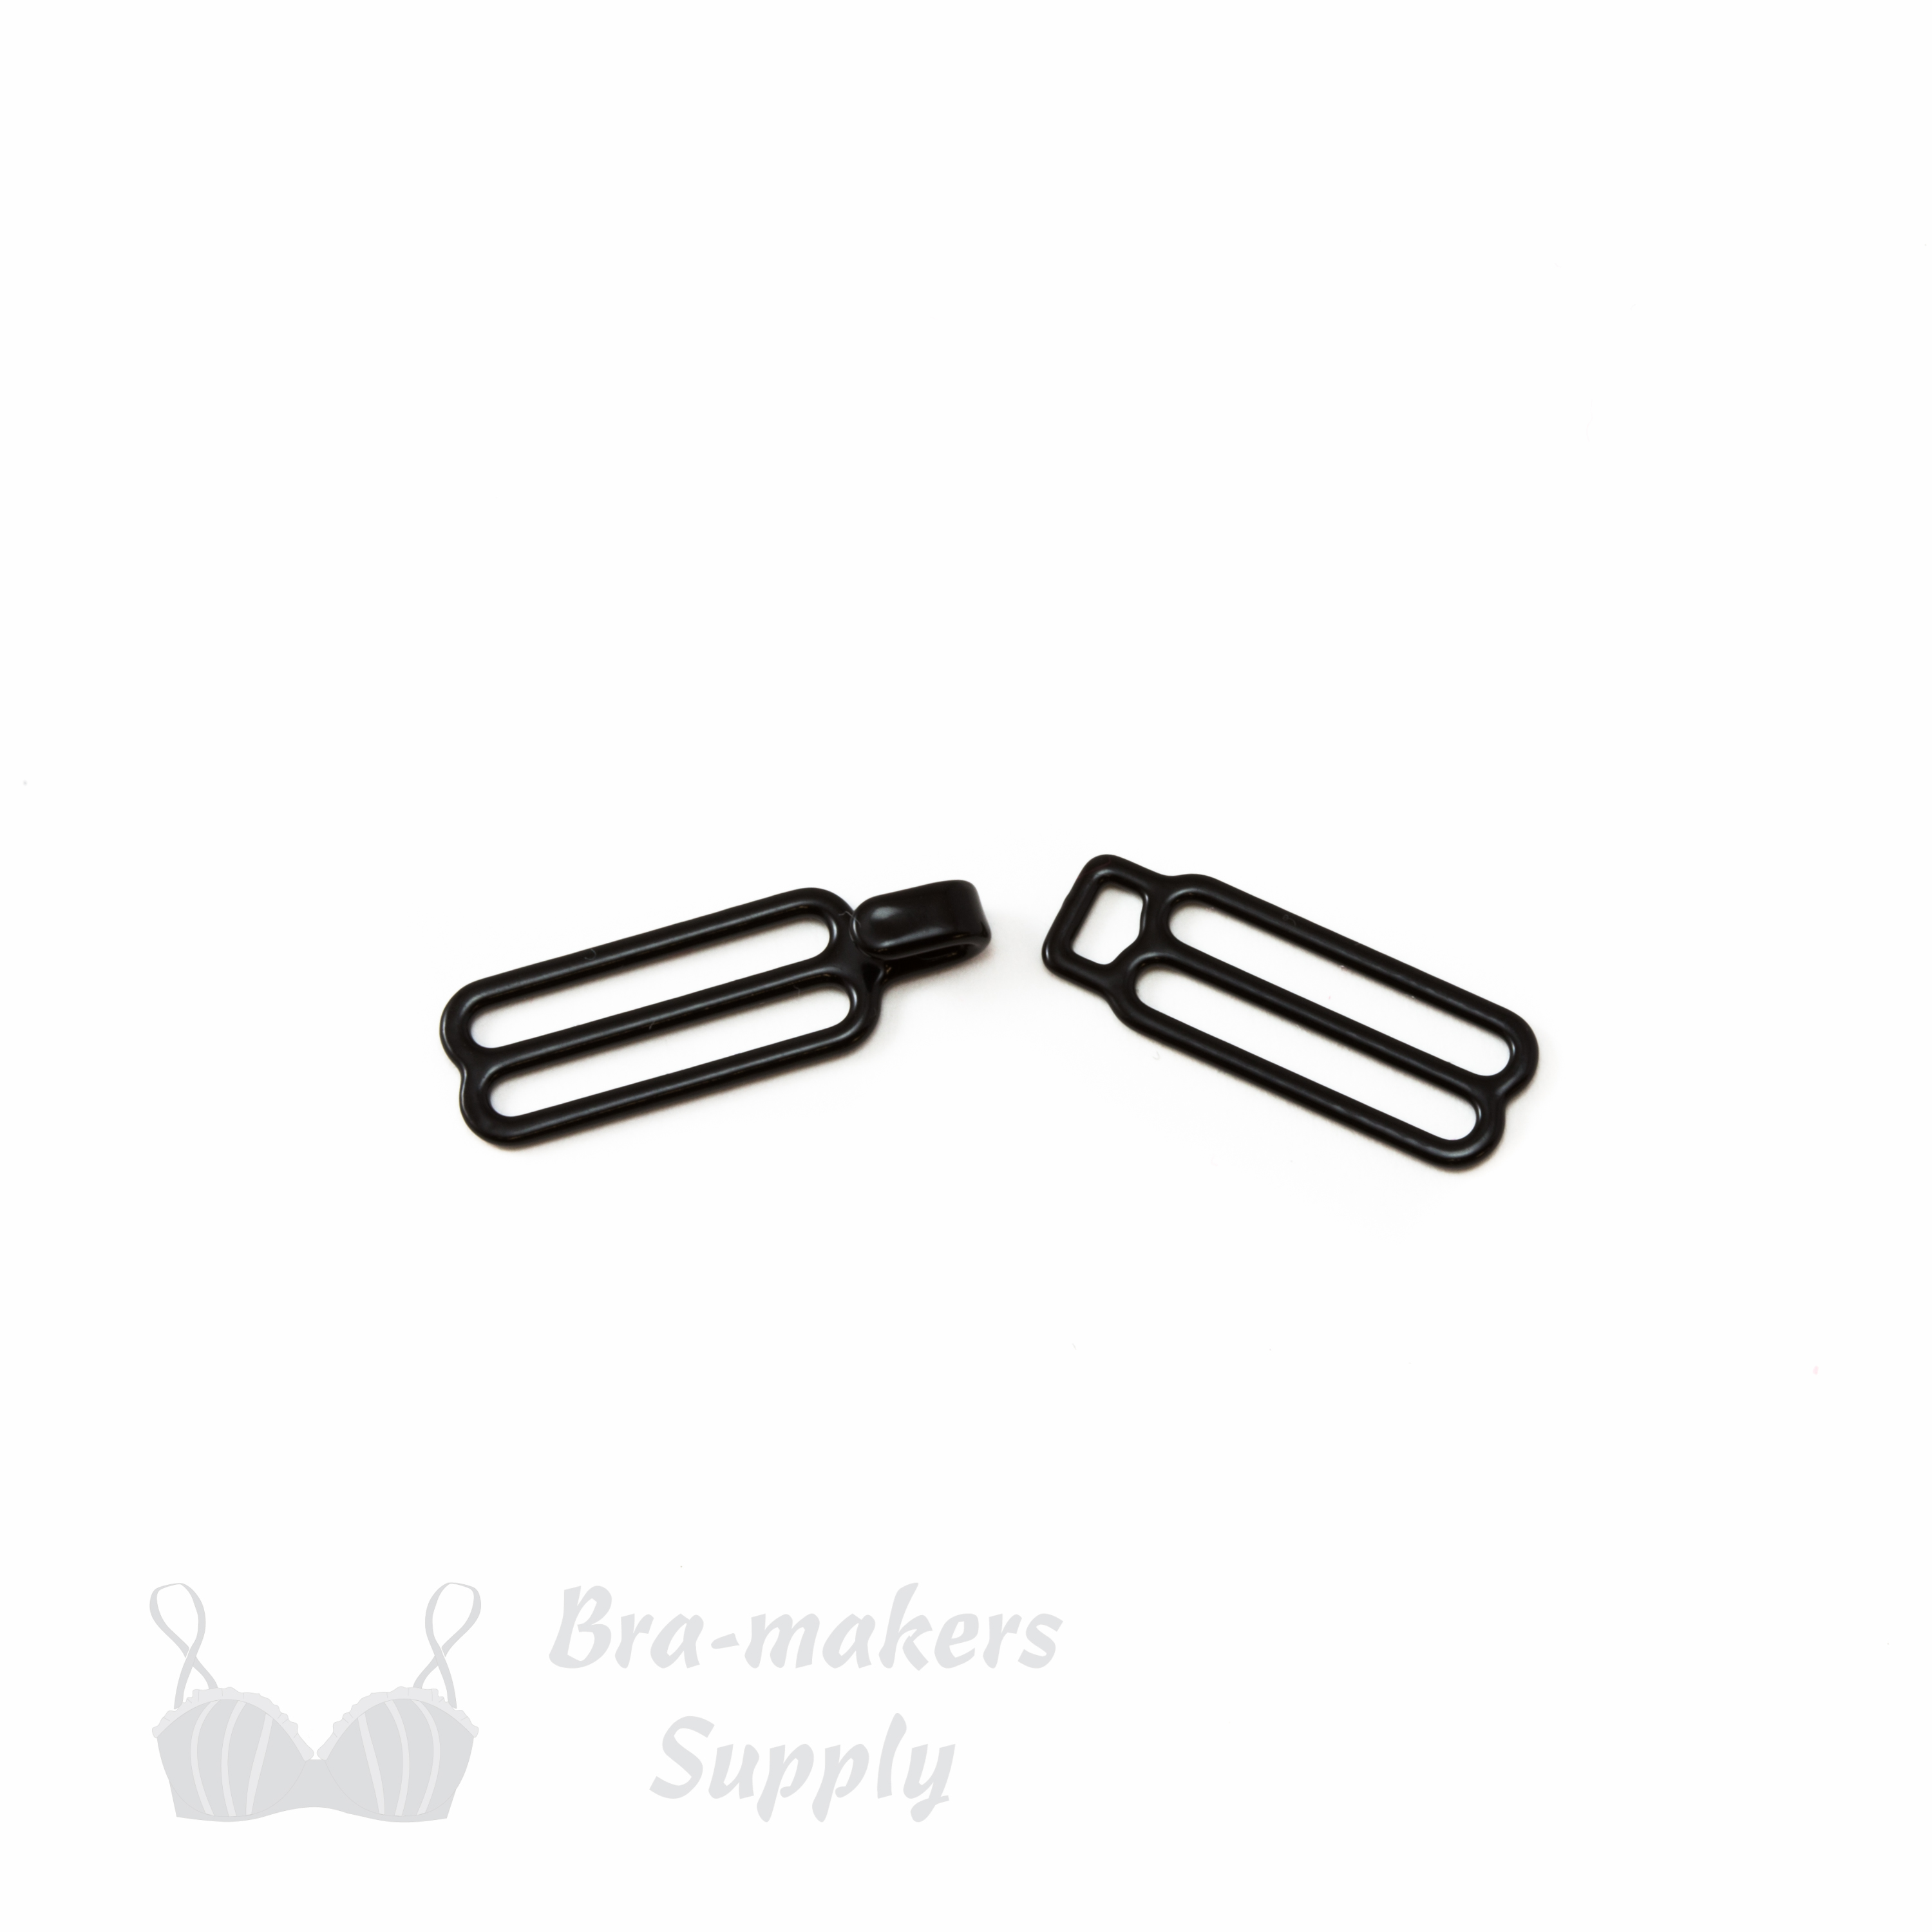 metal slider hooks SH-60 black from Bra-Makers Supply 1 black set shown